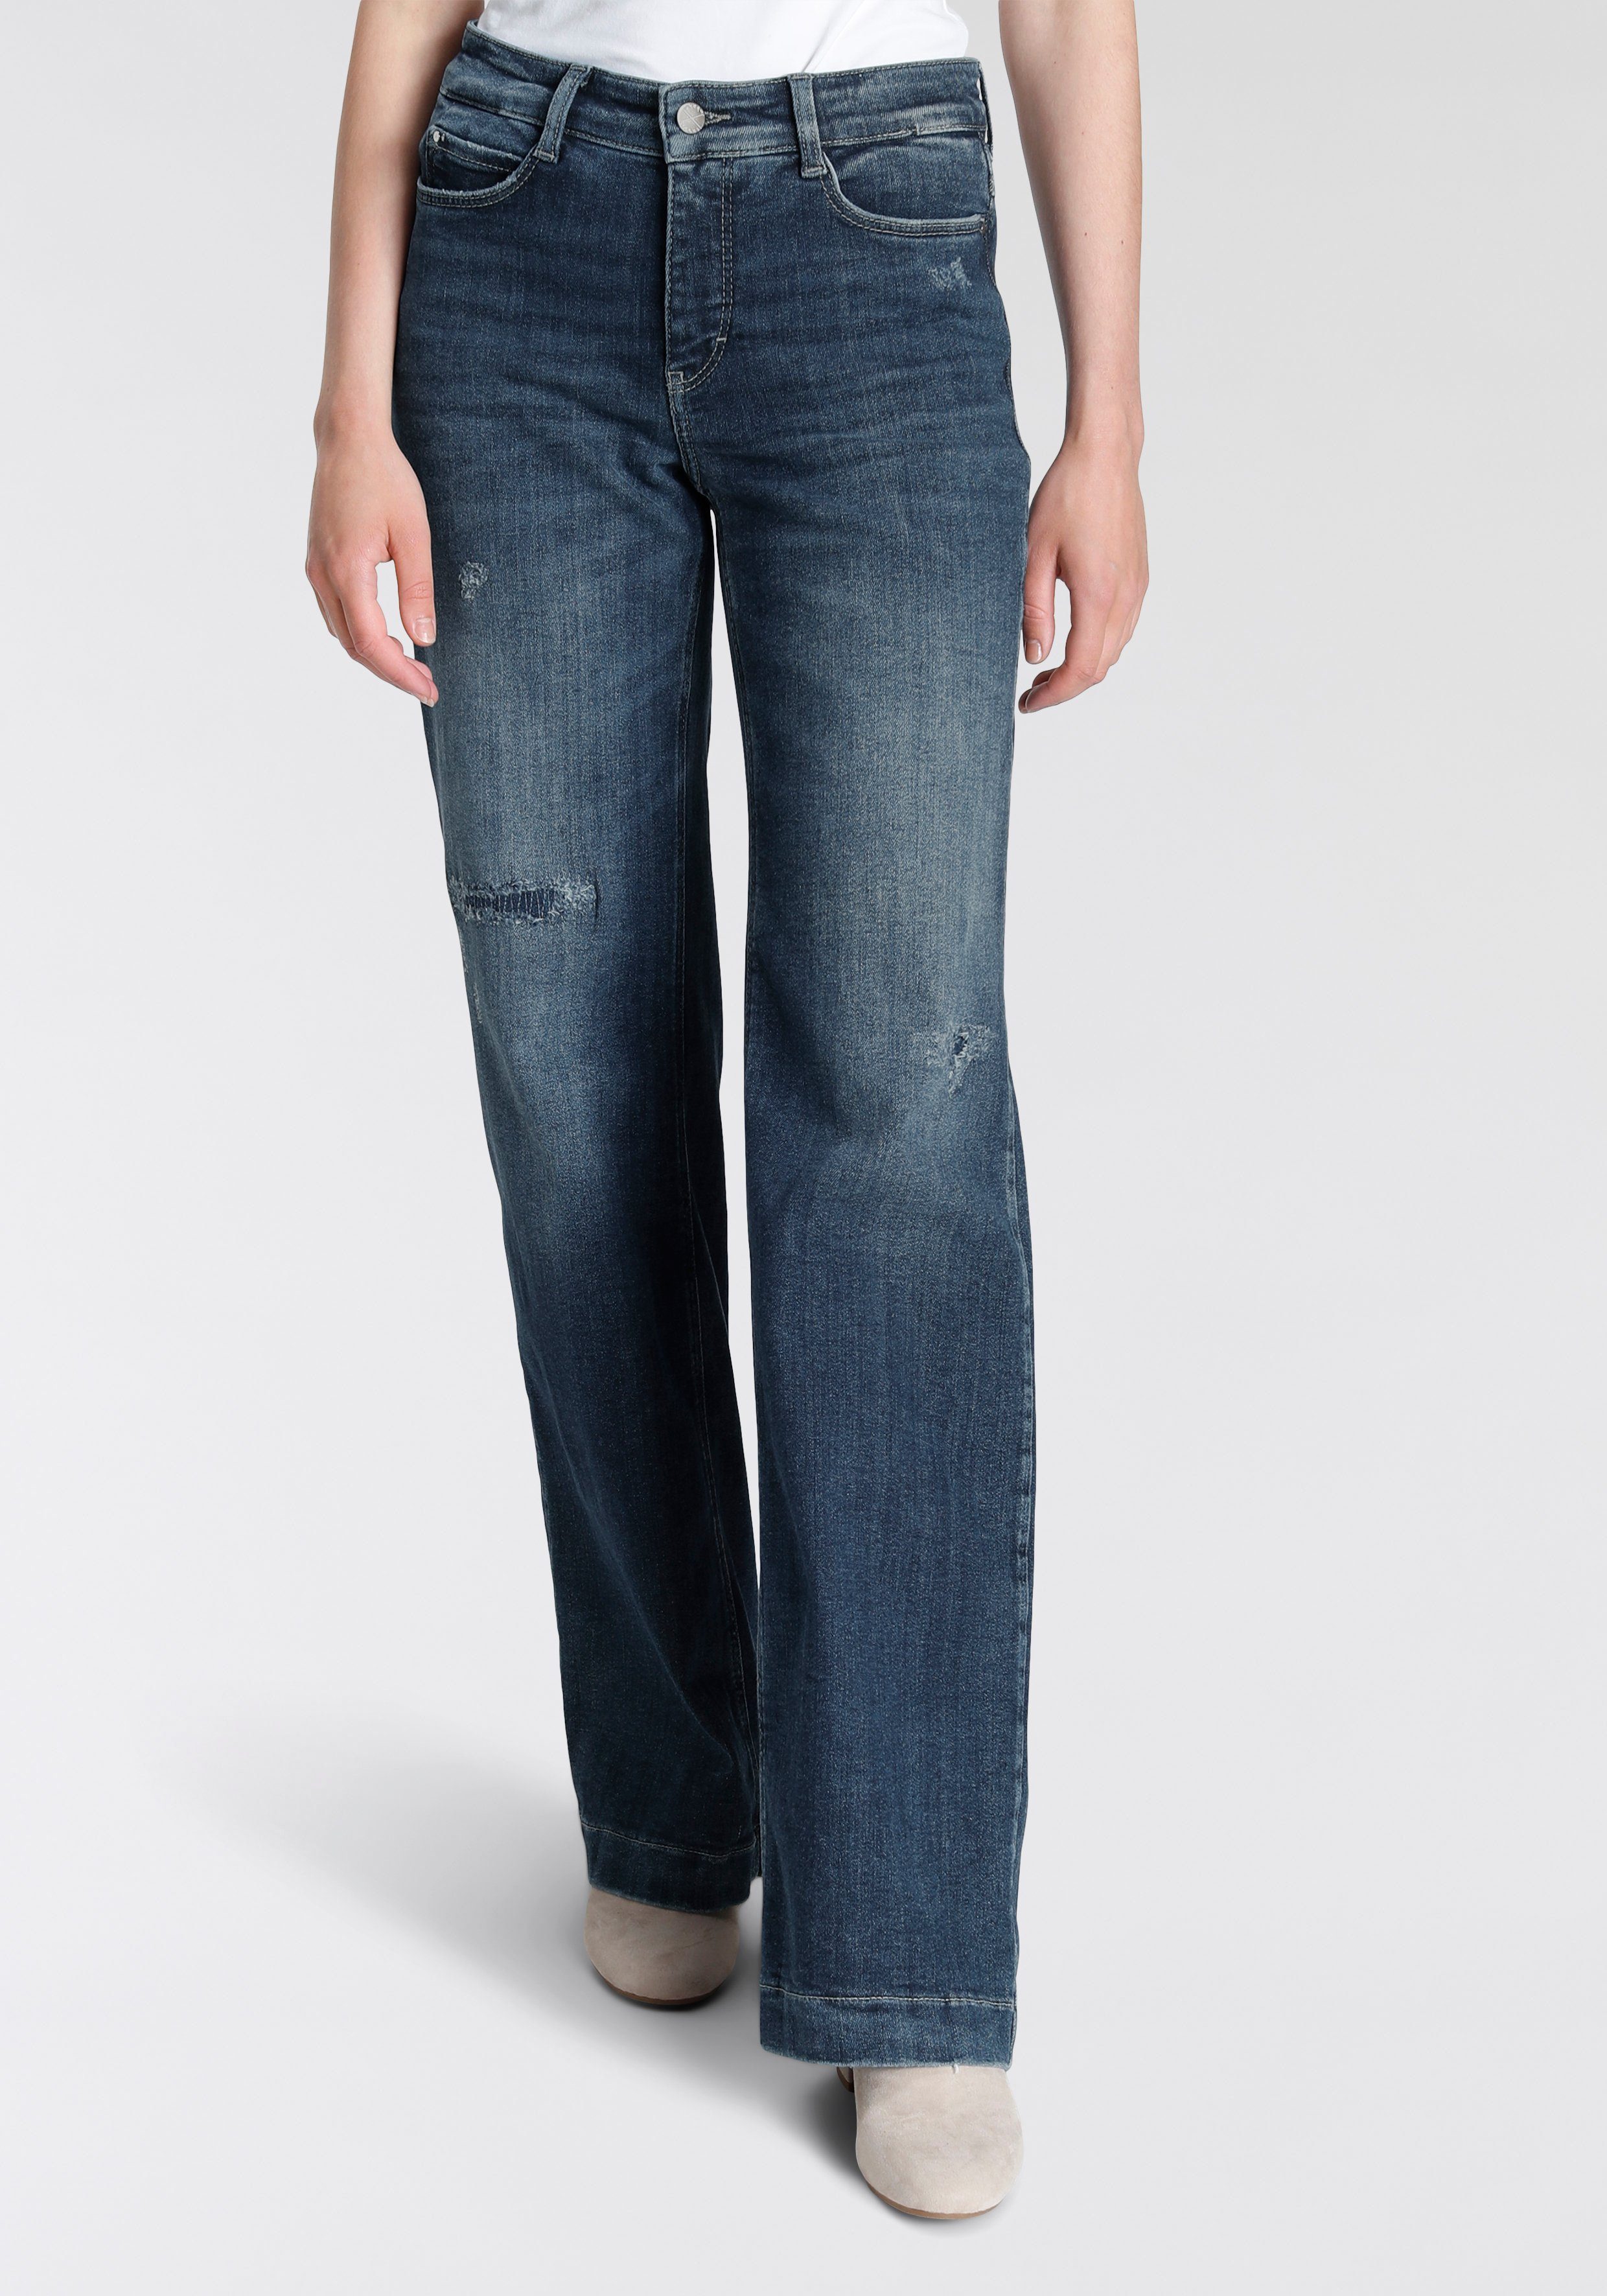 MAC Weite Jeans Dream-Wideleg Super modern und weit geschnitten